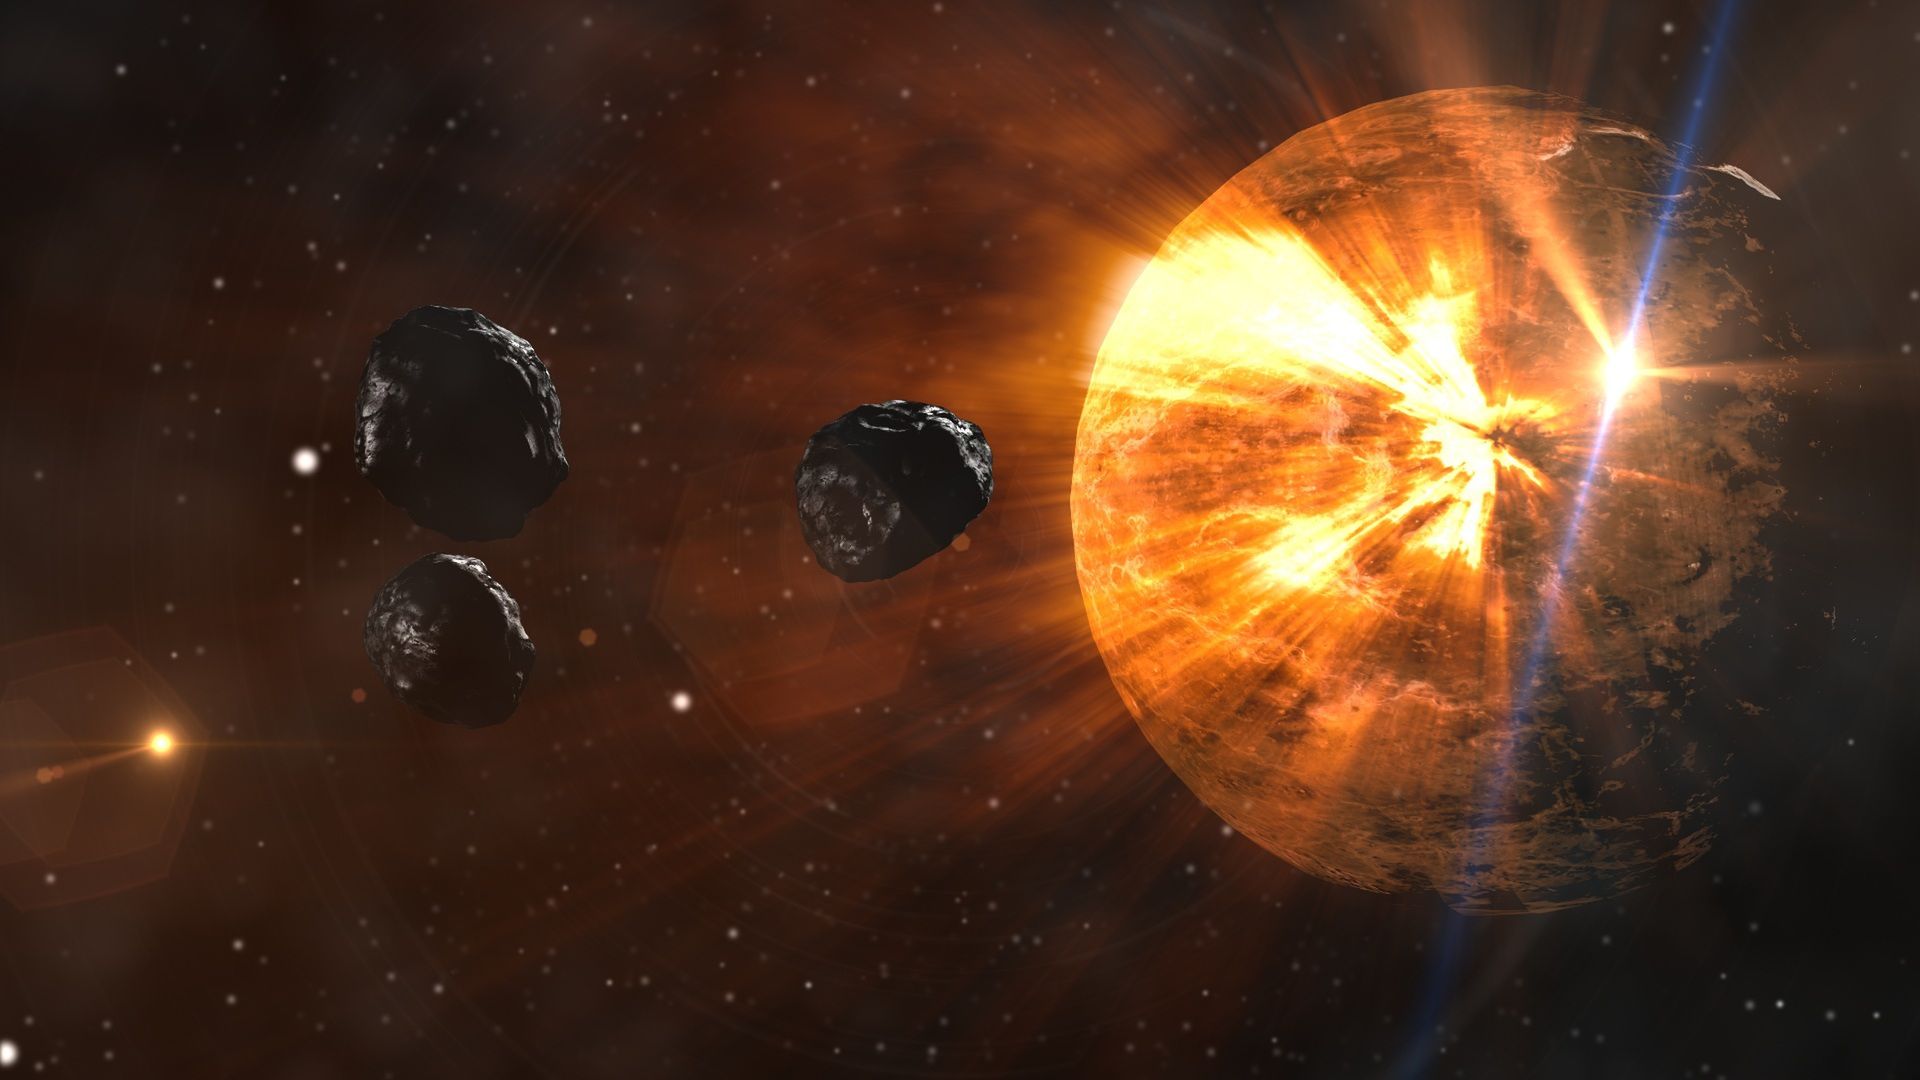 Zagrożenie ze strony asteroid jest bardzo prawdopodobne